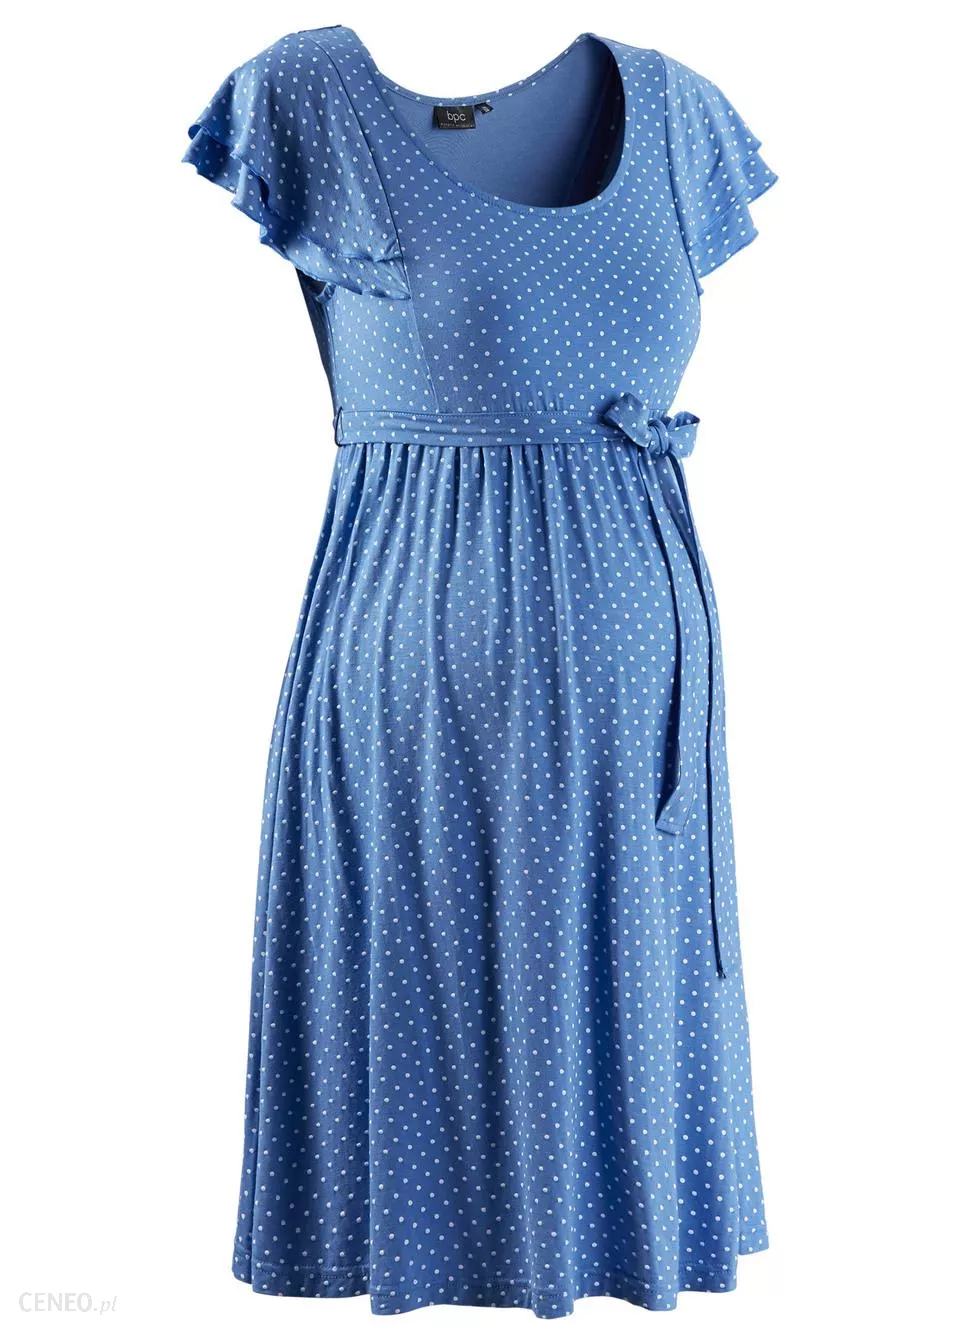 Sukienka shirtowa ciążowa błękitna, Bonprix 